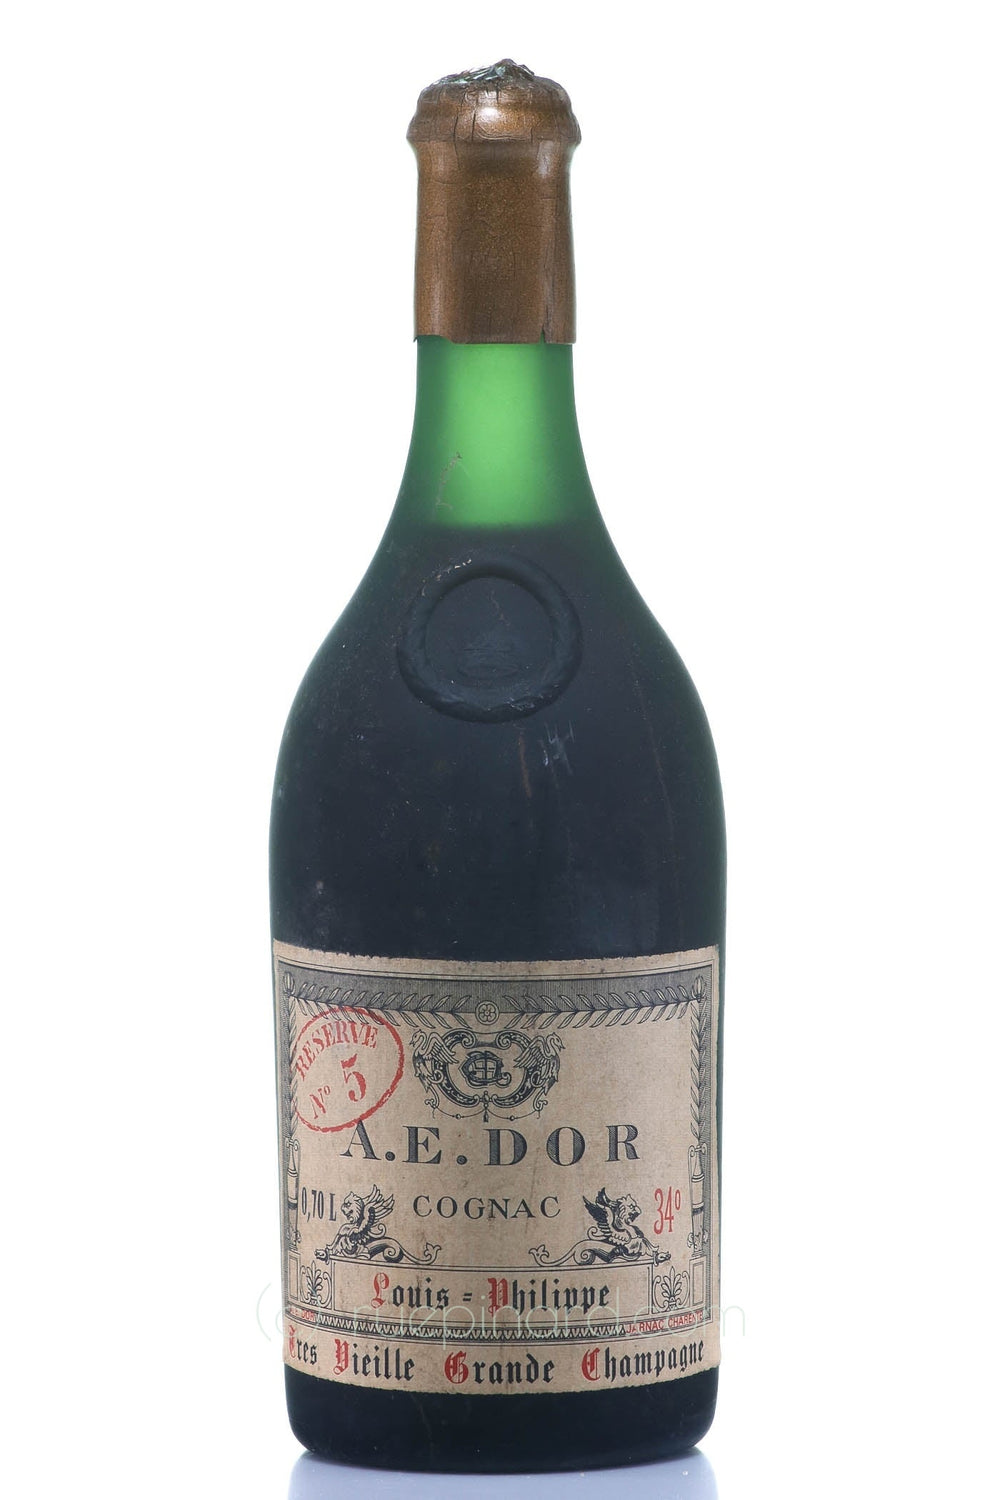 A.E. Dor Vieille Reserve No. 5 Cognac 1975 Vintage - Rue Pinard